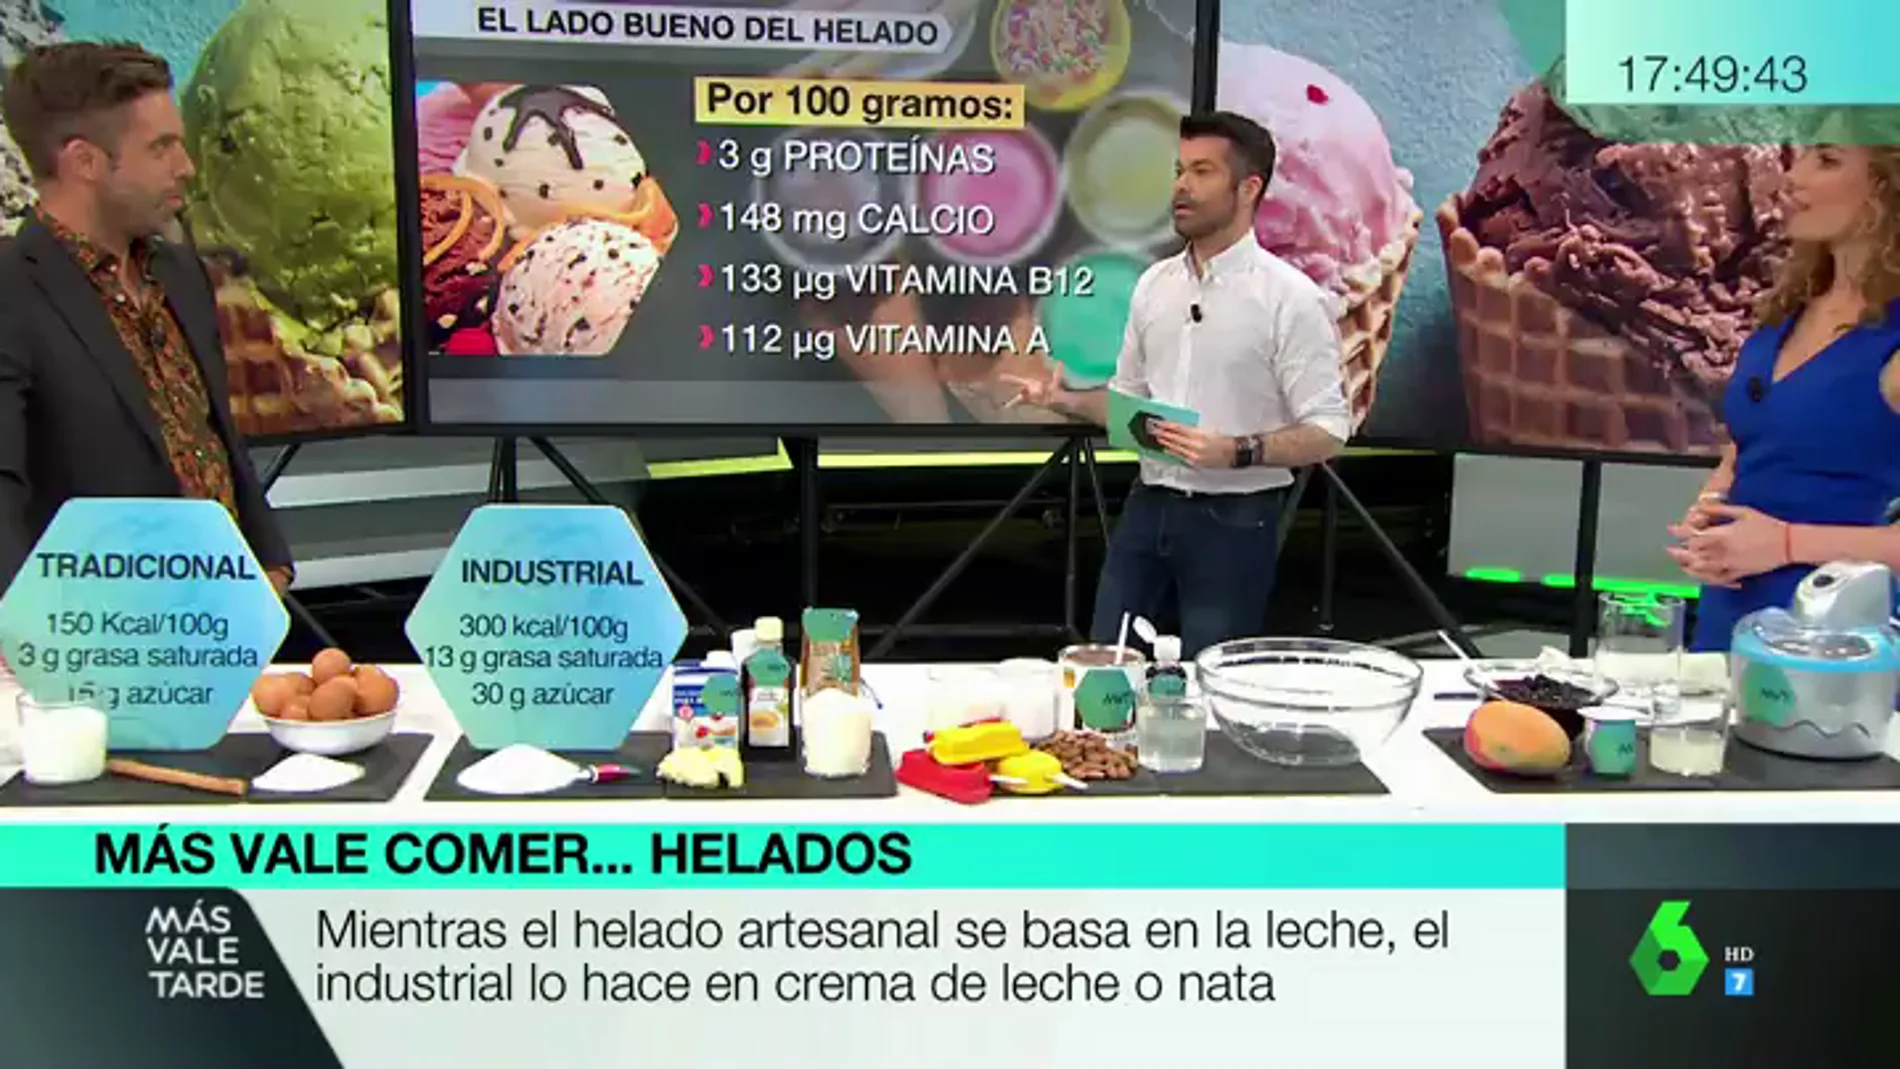 Luis Alberto Zamora explica en Más Vale Tarde las claves para comer un helado saludable